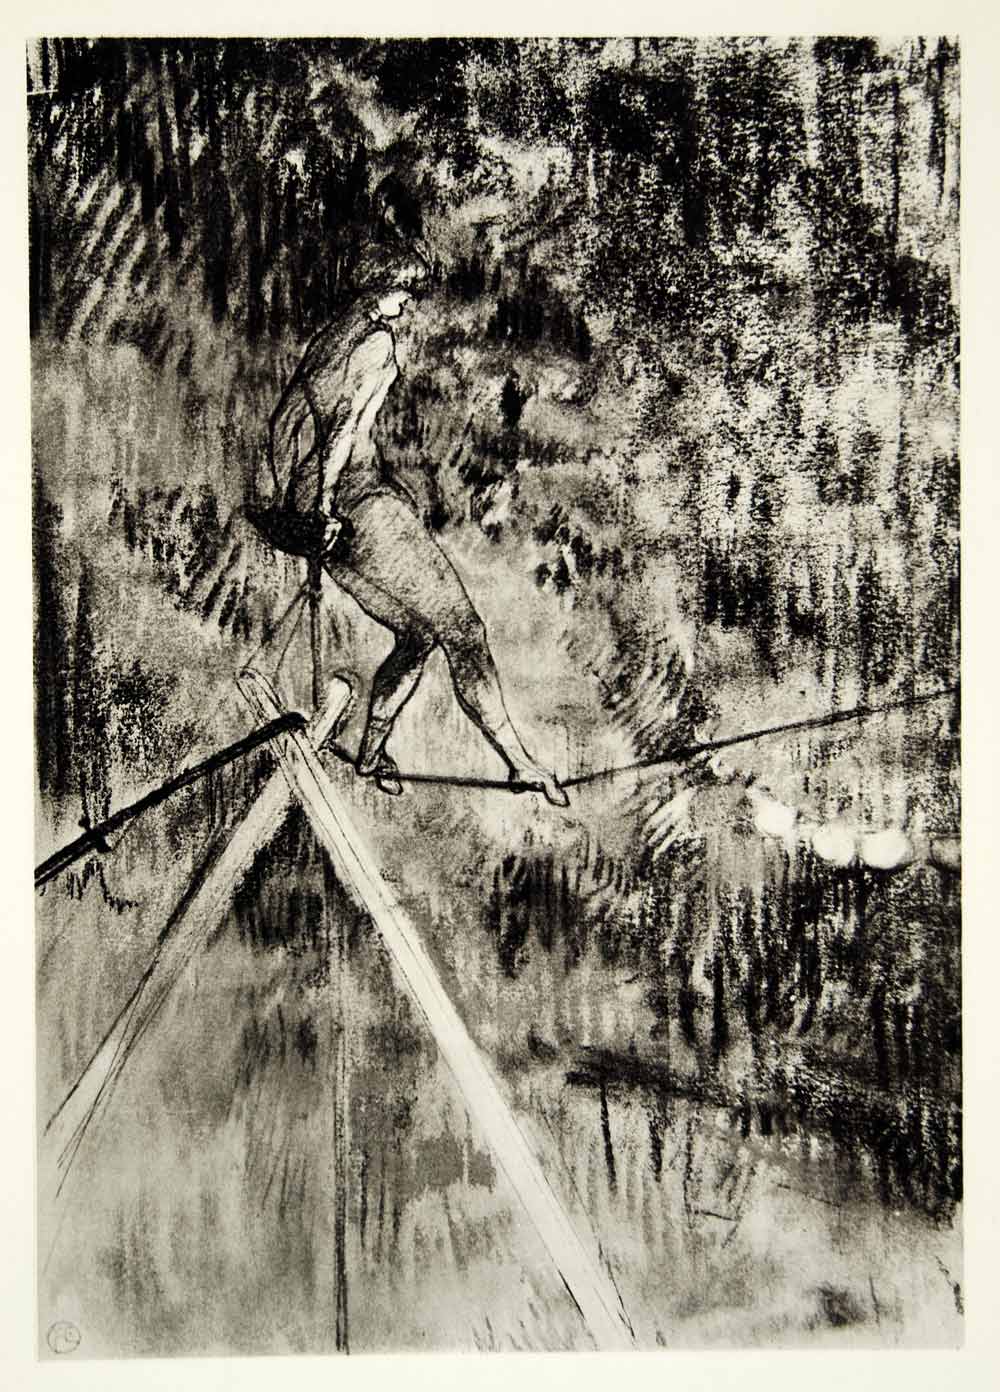 1939 Photogravure Henri Toulouse-Lautrec Circus Tightrope Walker Dancer Art TL4